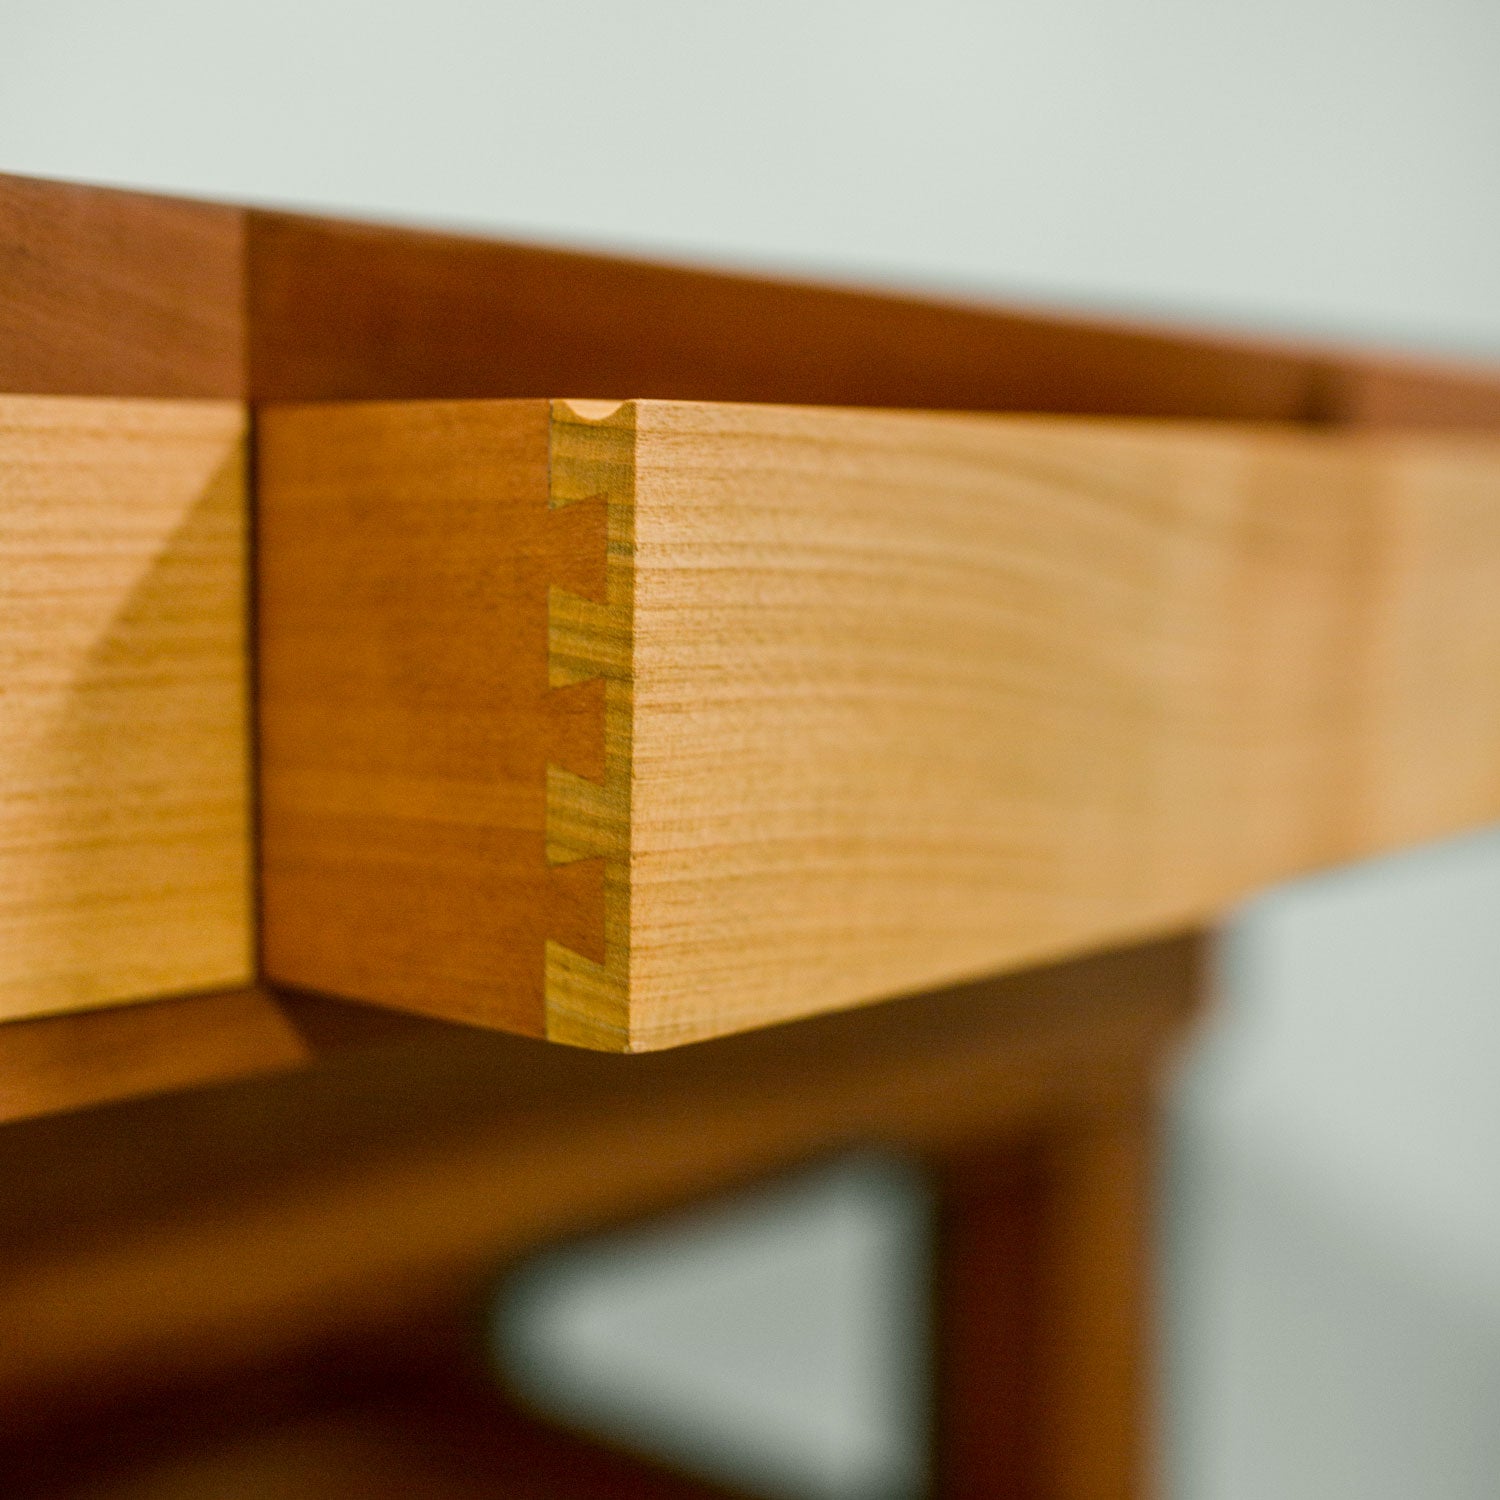 Spieletisch "Corbin" aus Holz - Elsbeere, Kirschenholz